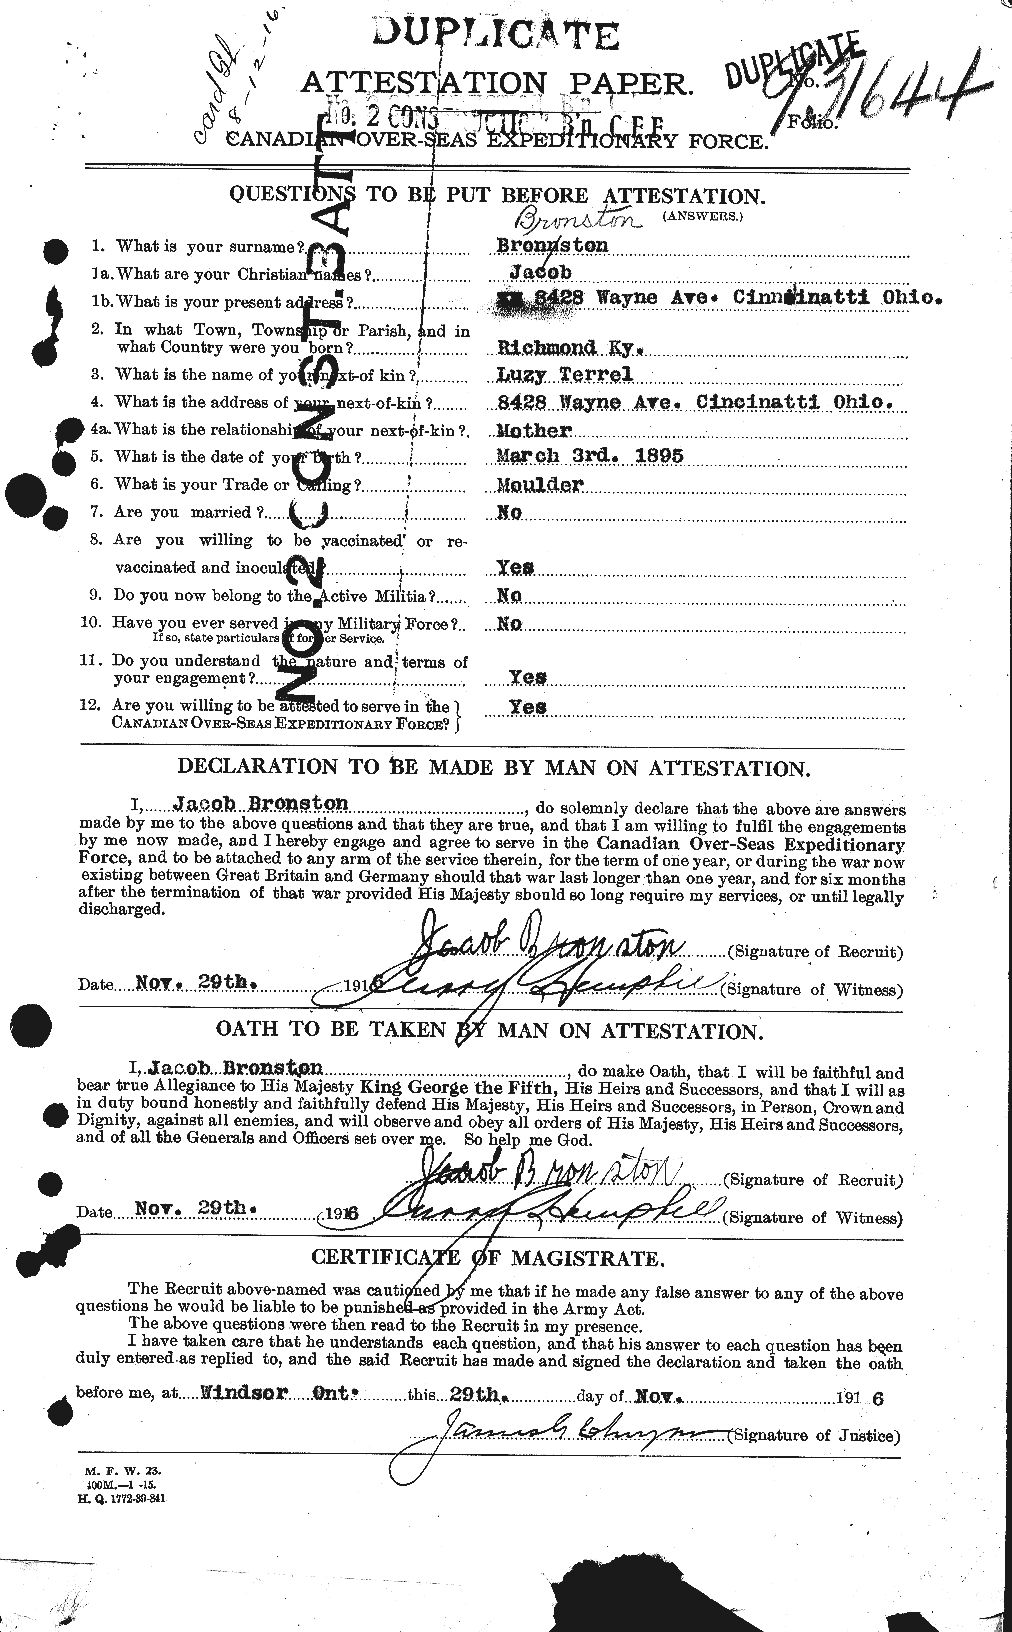 Dossiers du Personnel de la Première Guerre mondiale - CEC 262235a